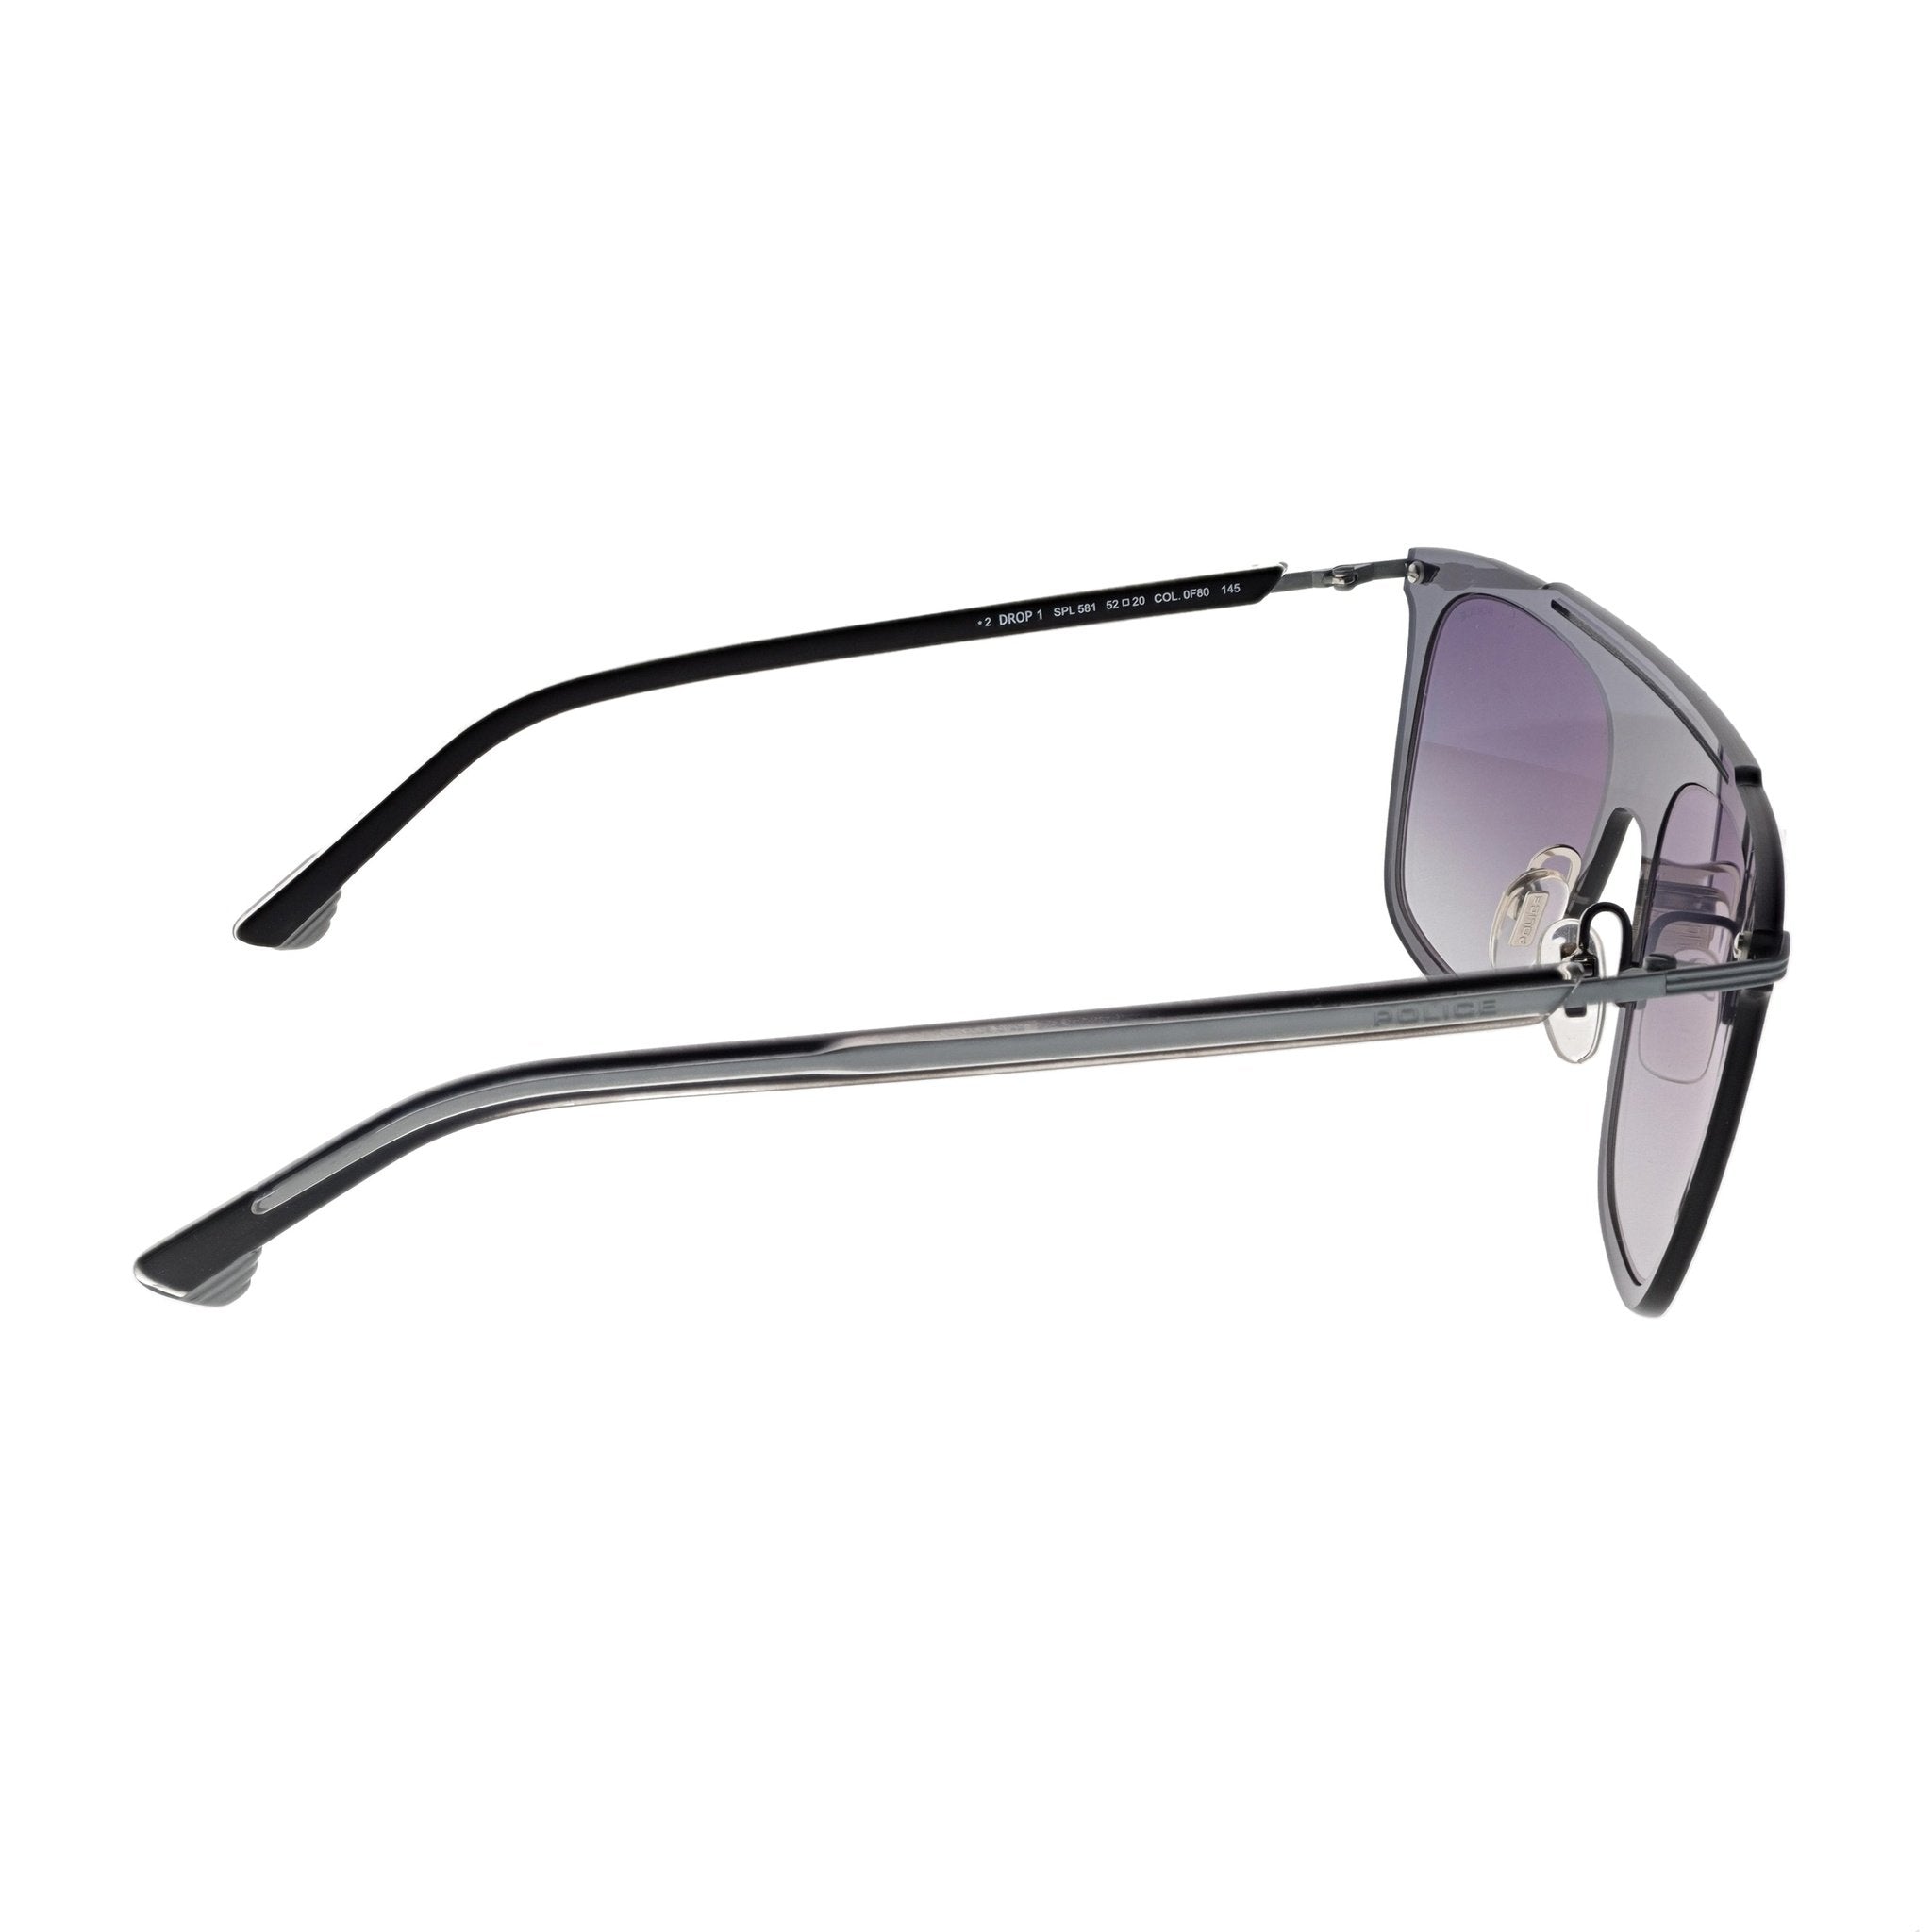 Police Sunglasses - SPL581-0F80